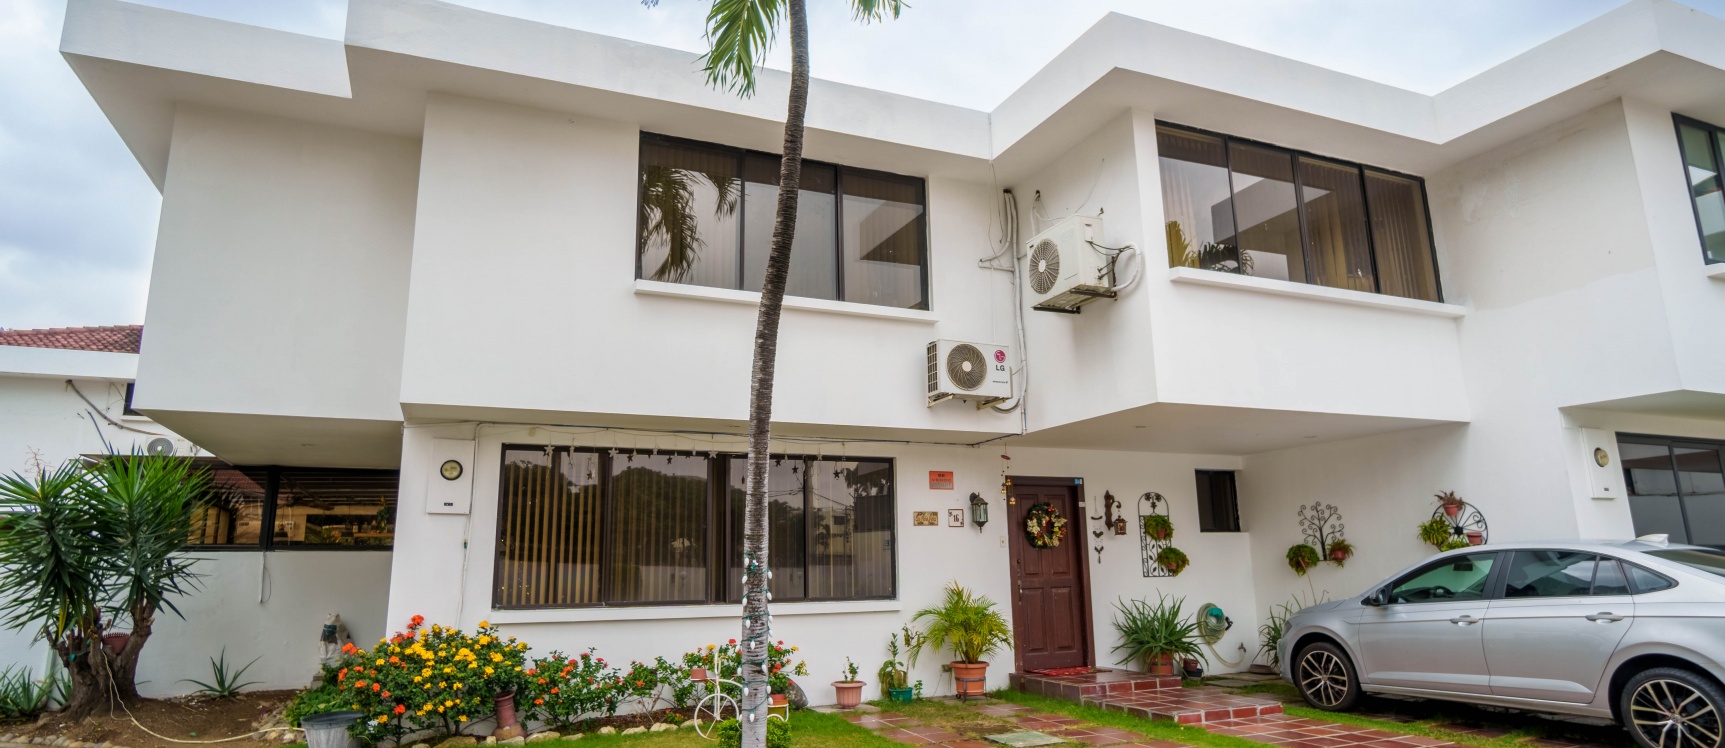 GeoBienes - Casa en venta ubicada en la Urbanización El Manantial, Ceibos - Plusvalia Guayaquil Casas de venta y alquiler Inmobiliaria Ecuador